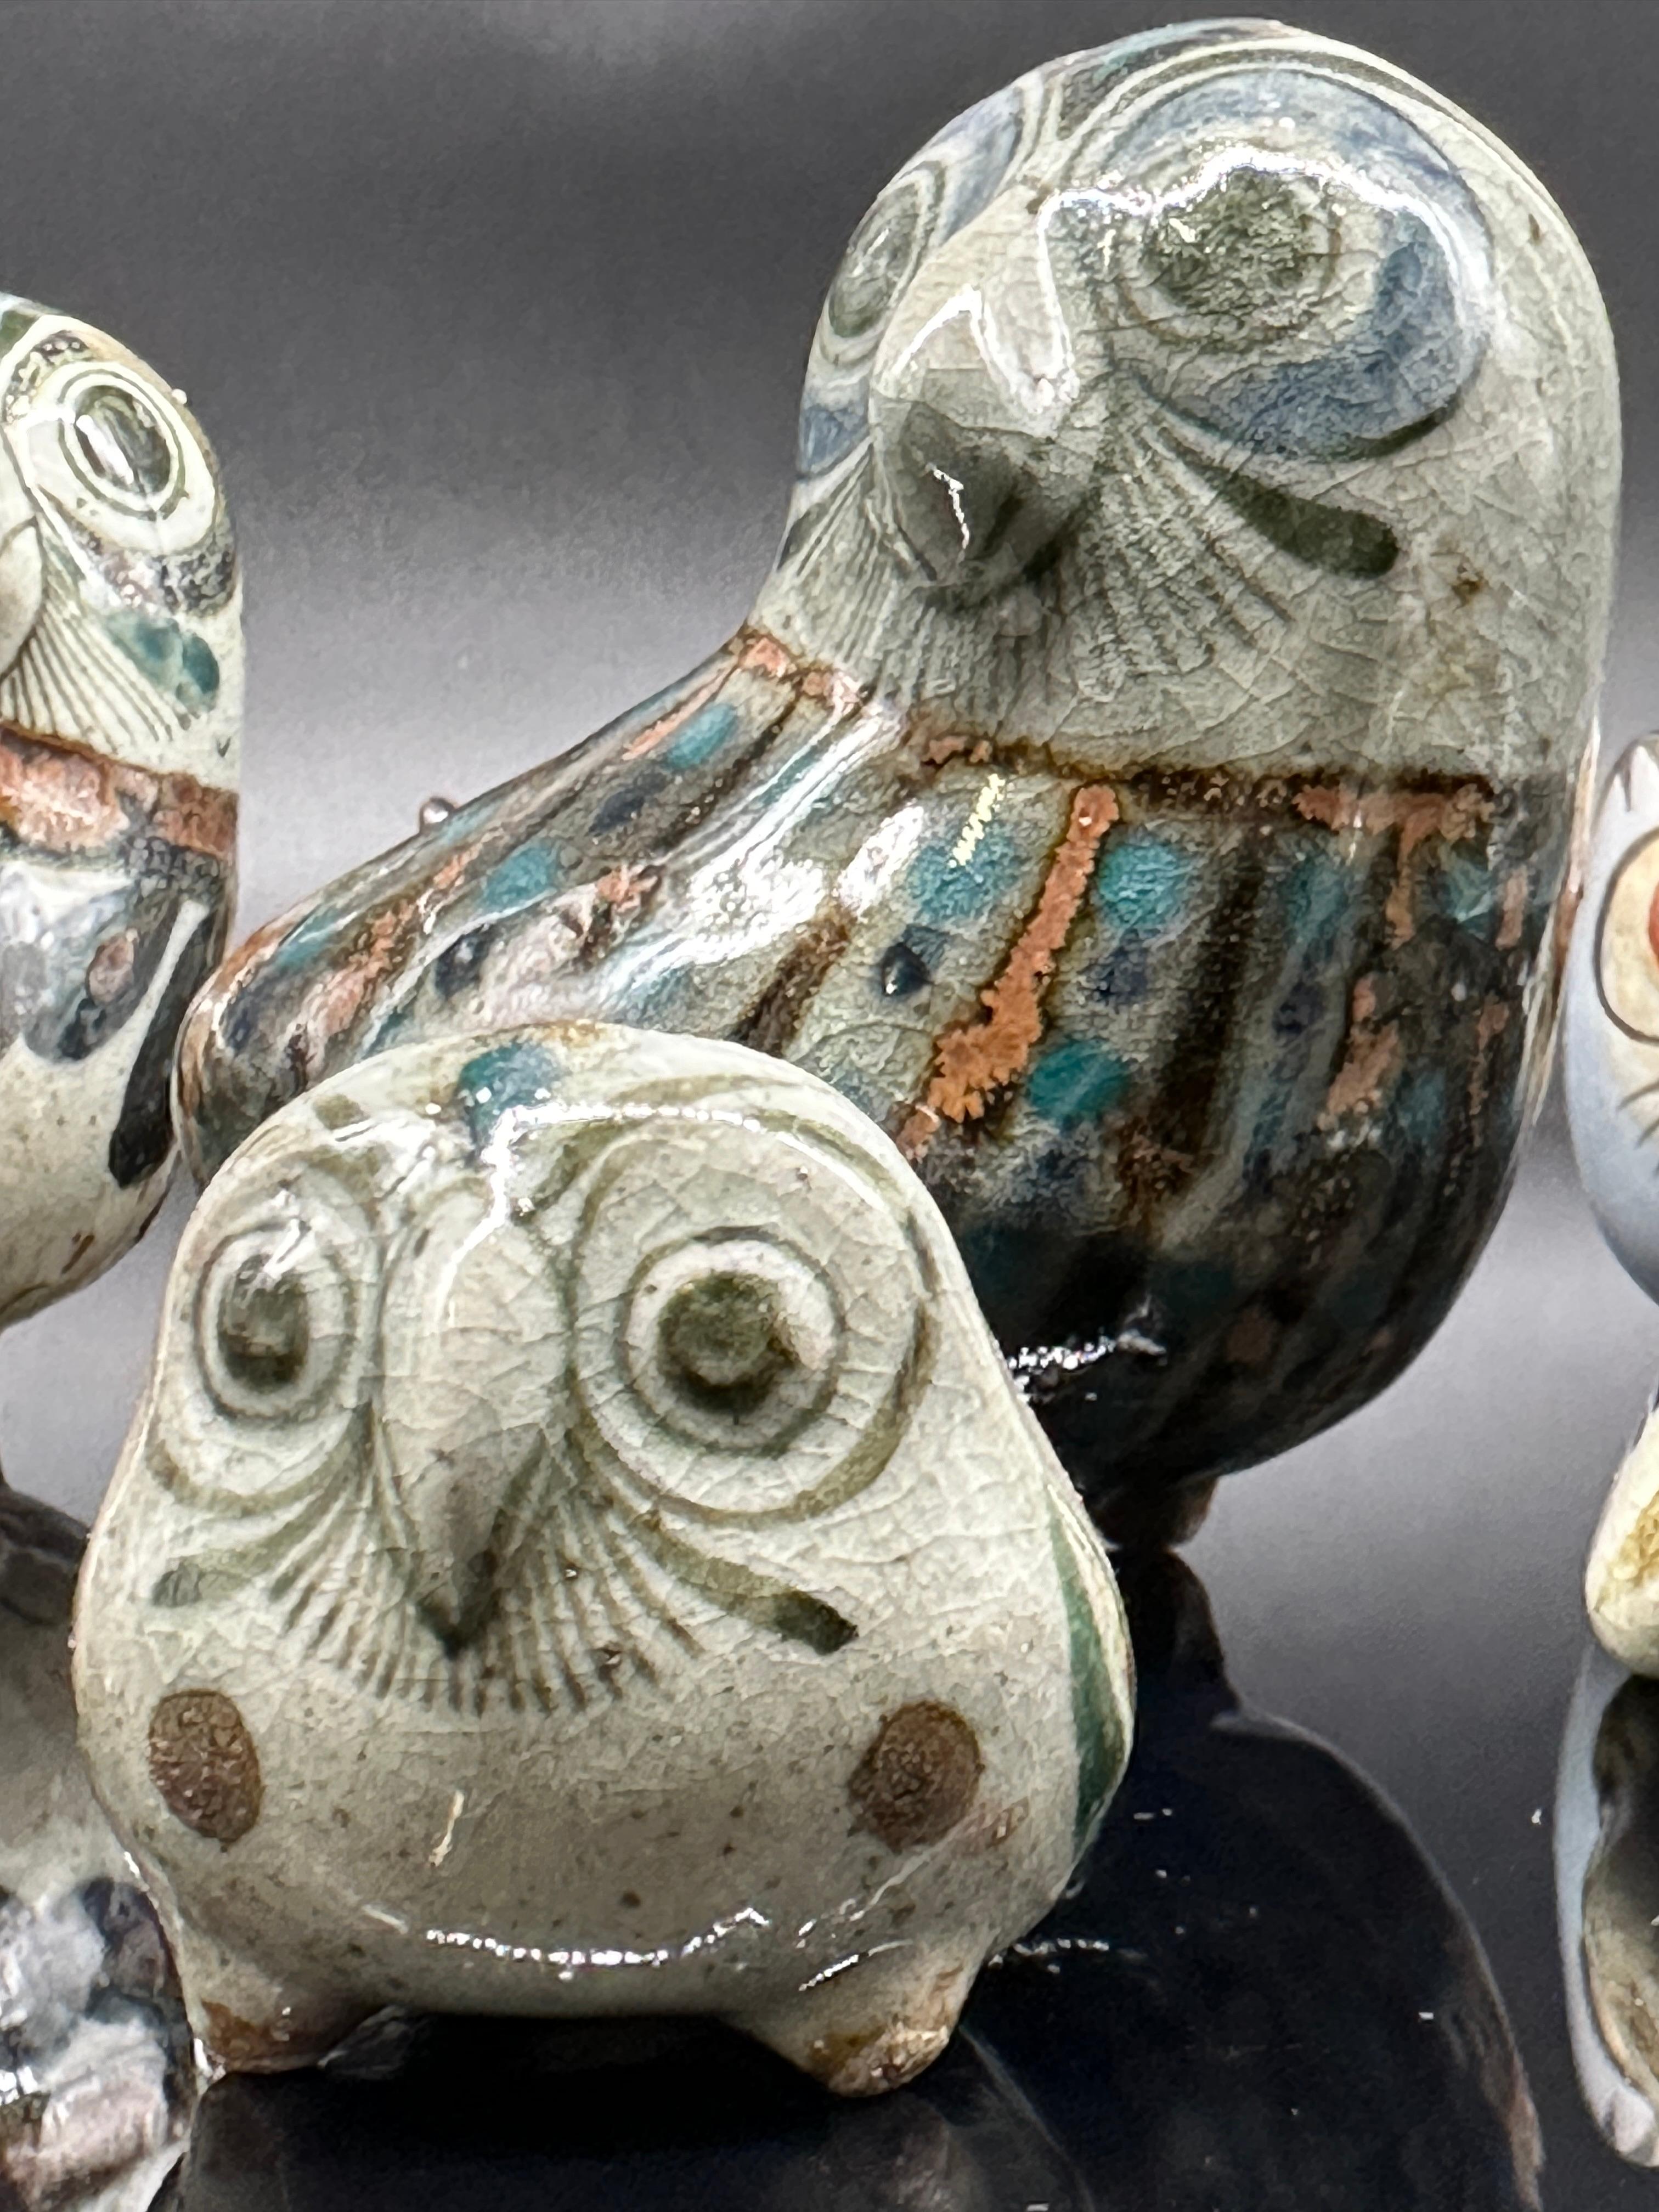 Seven Mexican Pottery Birds